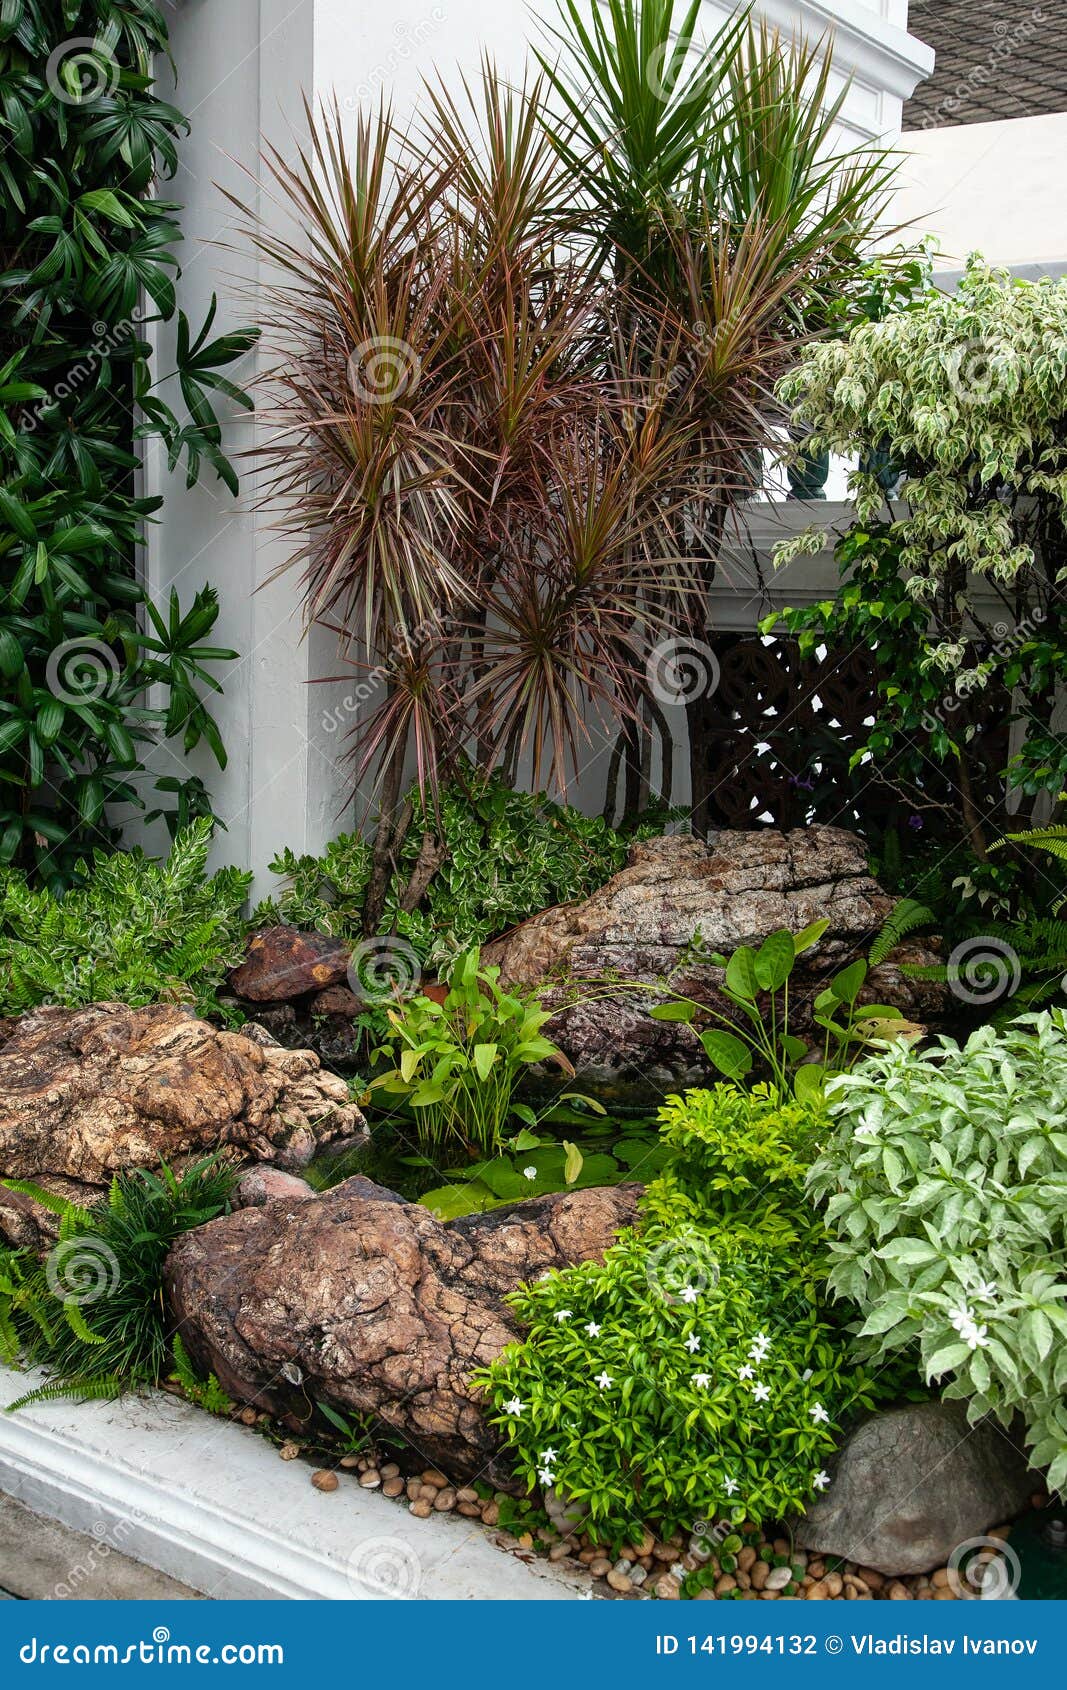 Asian Garden Landscape In Bangkok Thailand Stock Photo Image Of